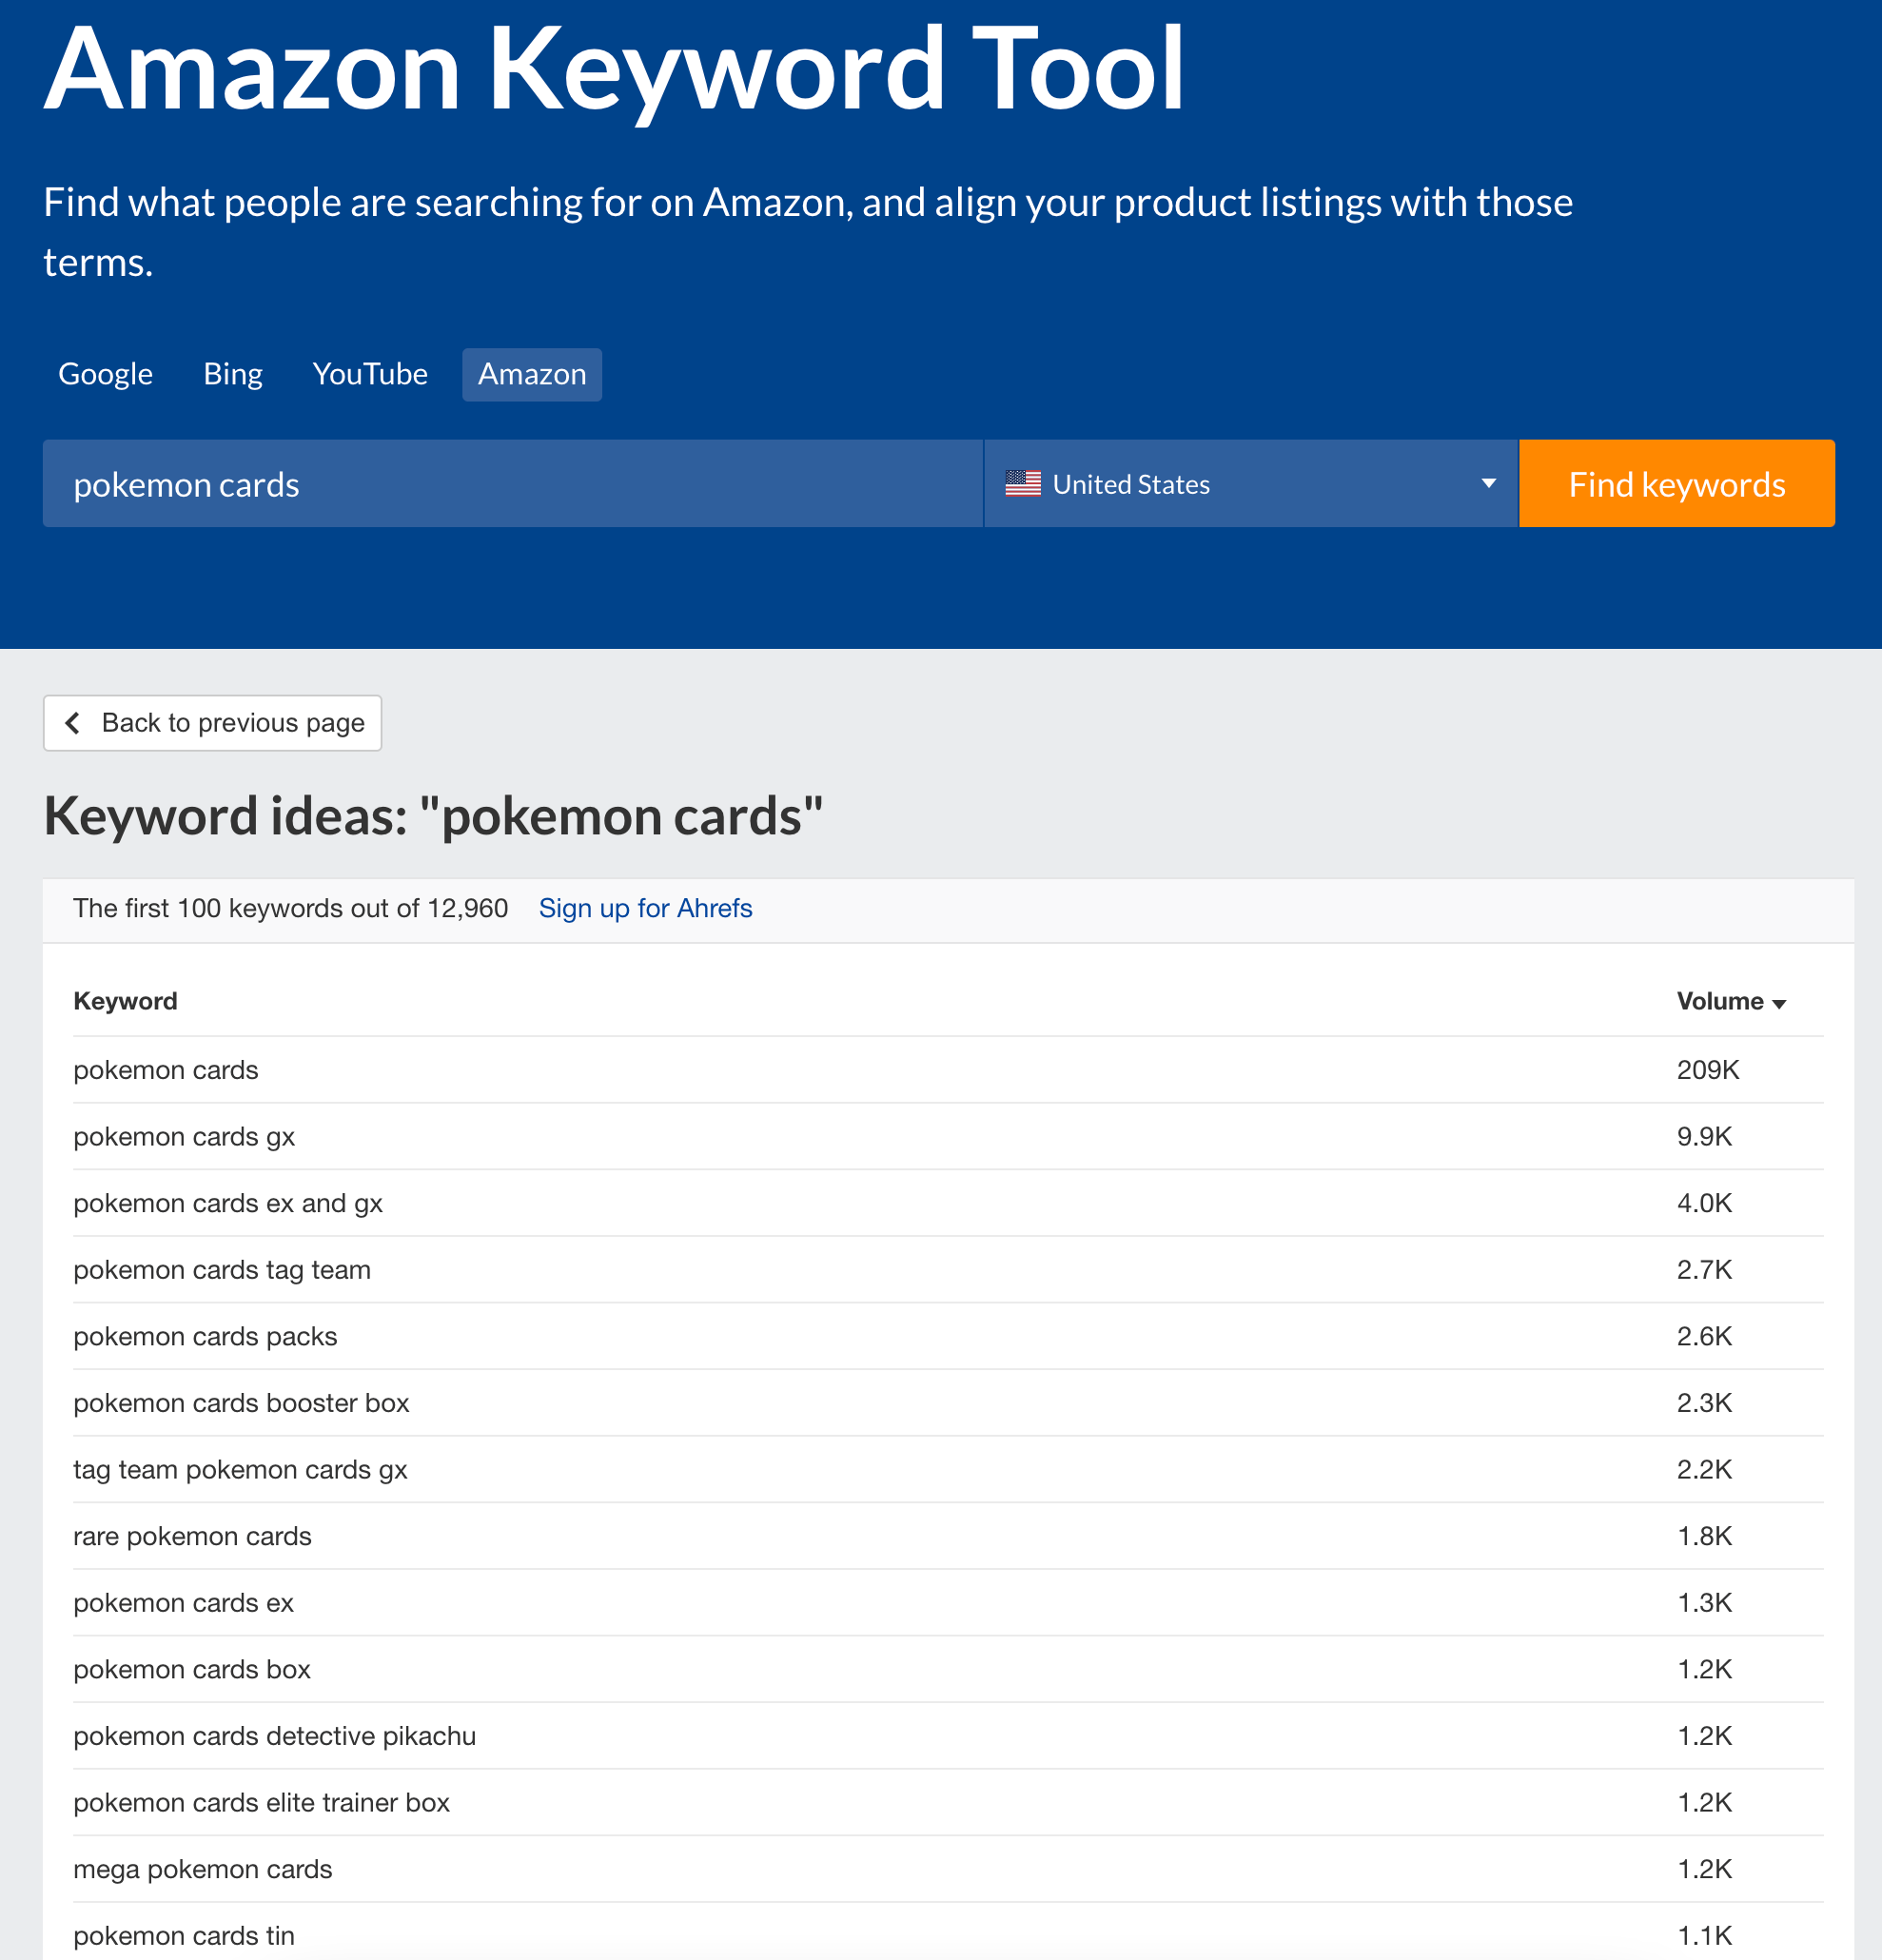 il generatore di parole chiave gratuito ahrefs ha un volume di ricerca per Amazon.